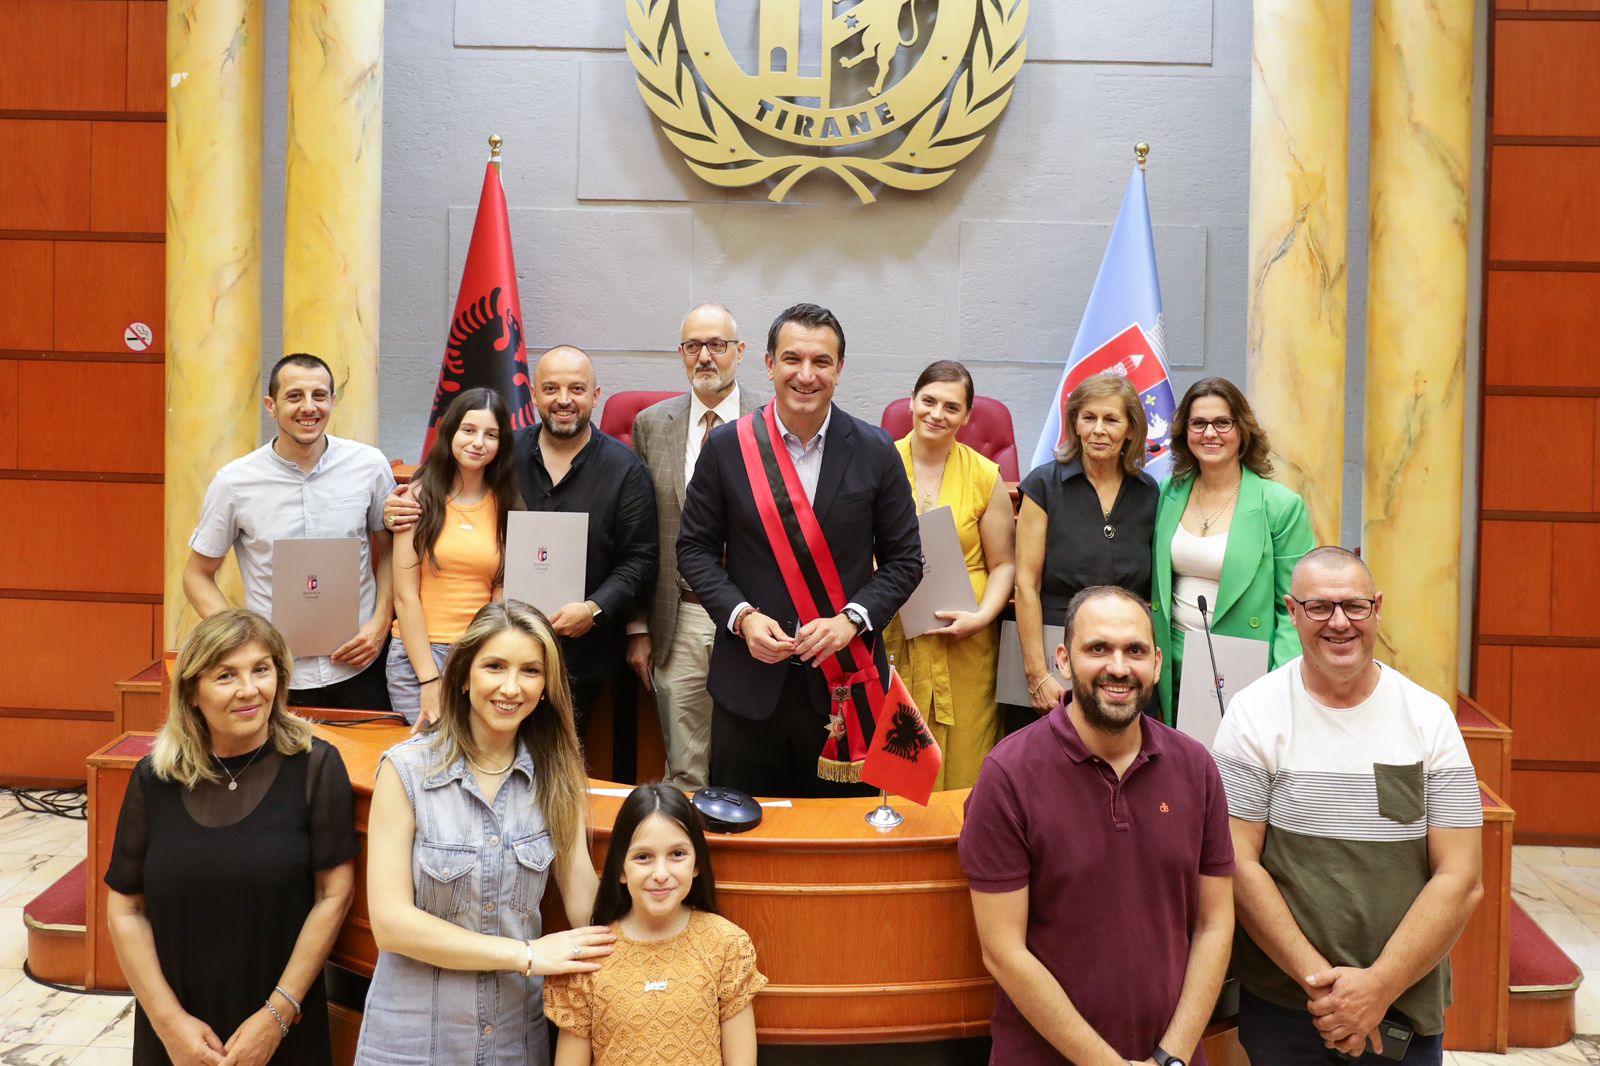 6 qytetare marrin nenshtetesine shqiptare veliaj vendi eshte ne ditet me te mira bashkohemi ne nje skuader me misionin per te cuar shqiperine perpara